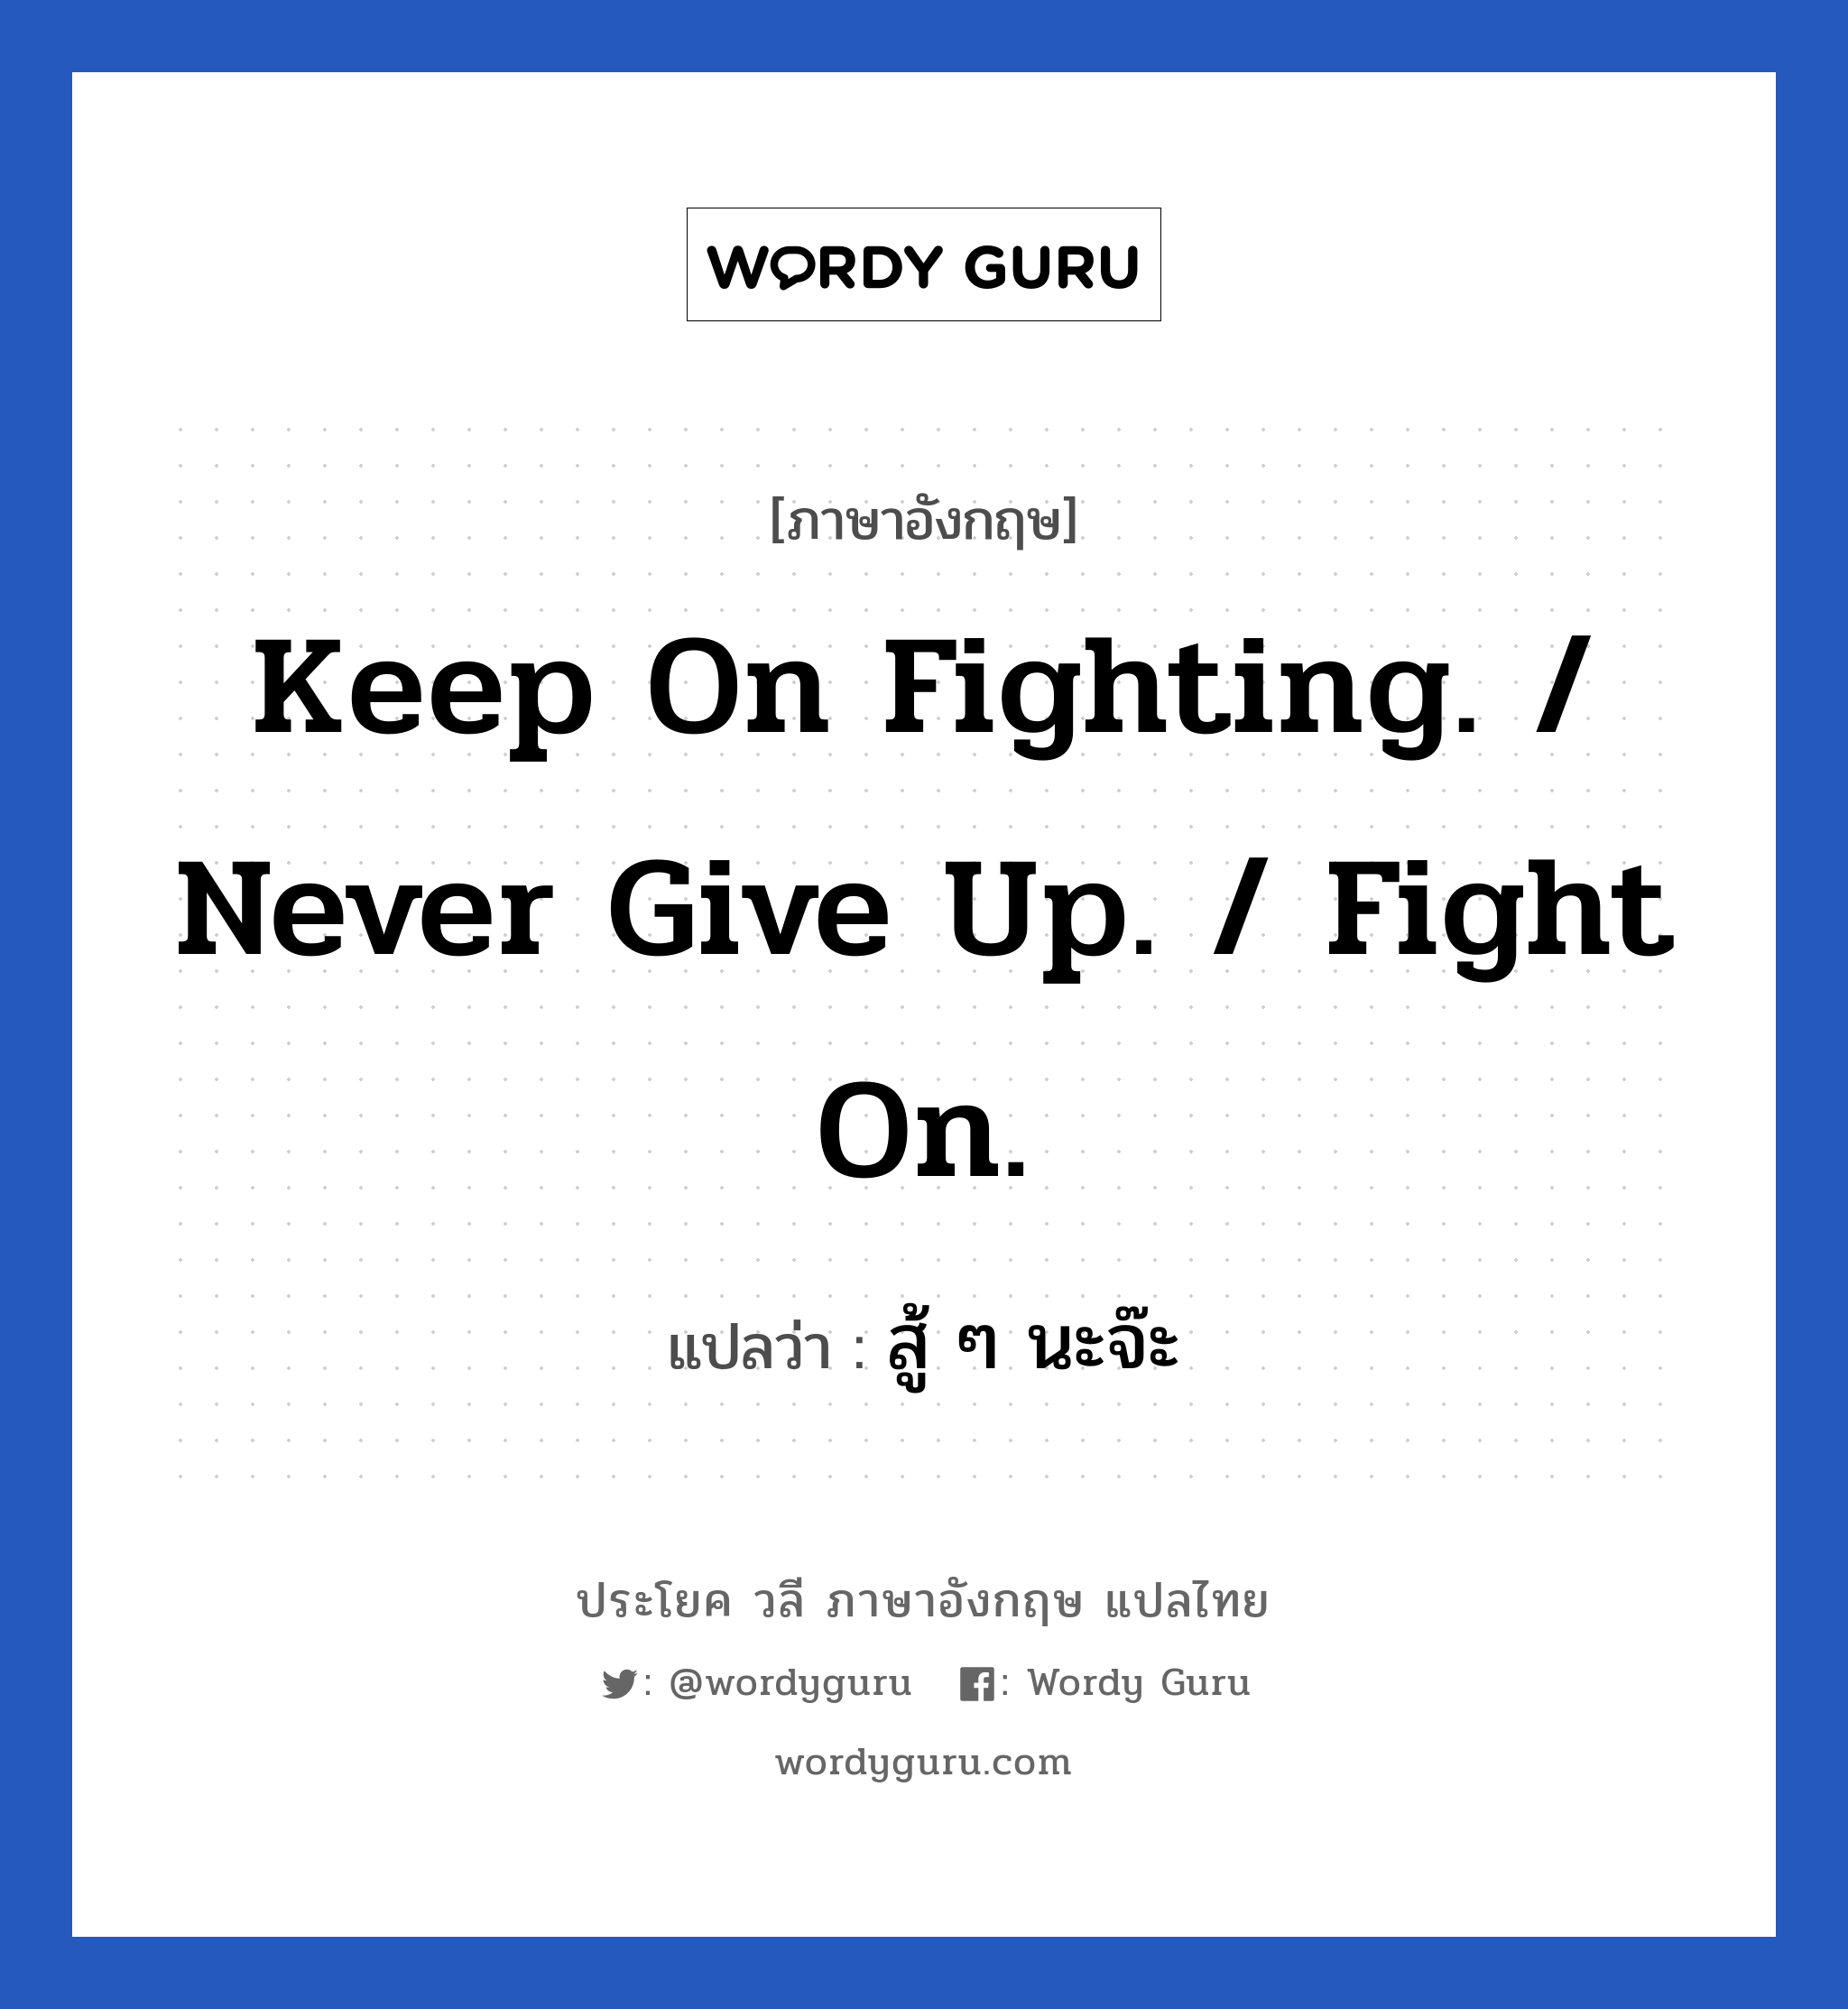 สู้ ๆ นะจ๊ะ ภาษาอังกฤษ?, วลีภาษาอังกฤษ สู้ ๆ นะจ๊ะ แปลว่า Keep on fighting. / Never give up. / Fight on. หมวด ให้กำลังใจ